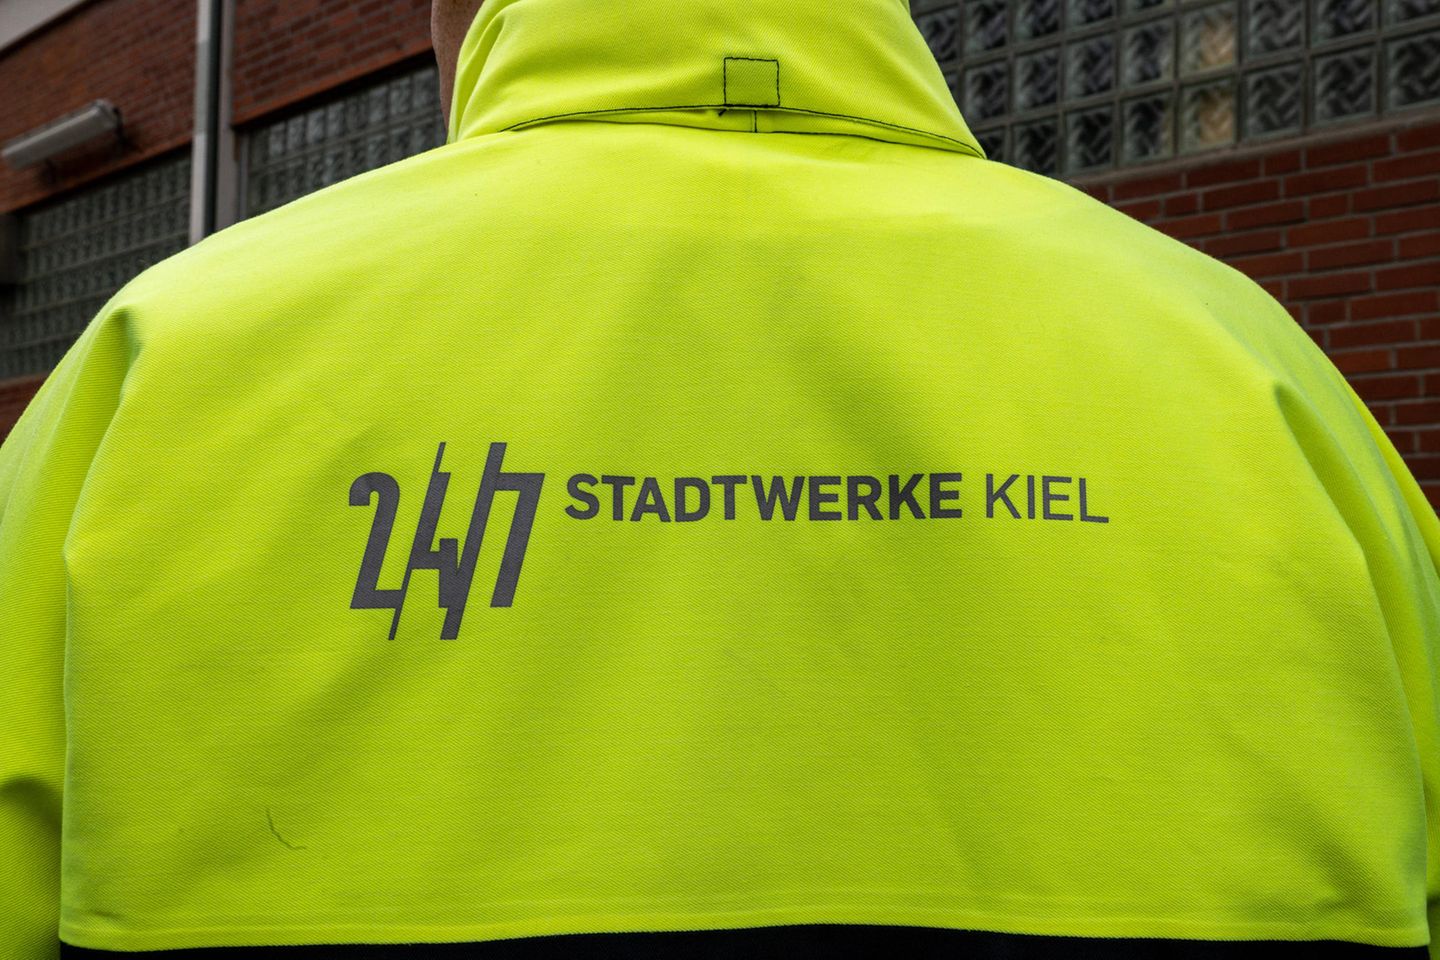 Mehr als 900 Mitarbeiter sind täglich für die Stadtwerke Kiel im Einsatz